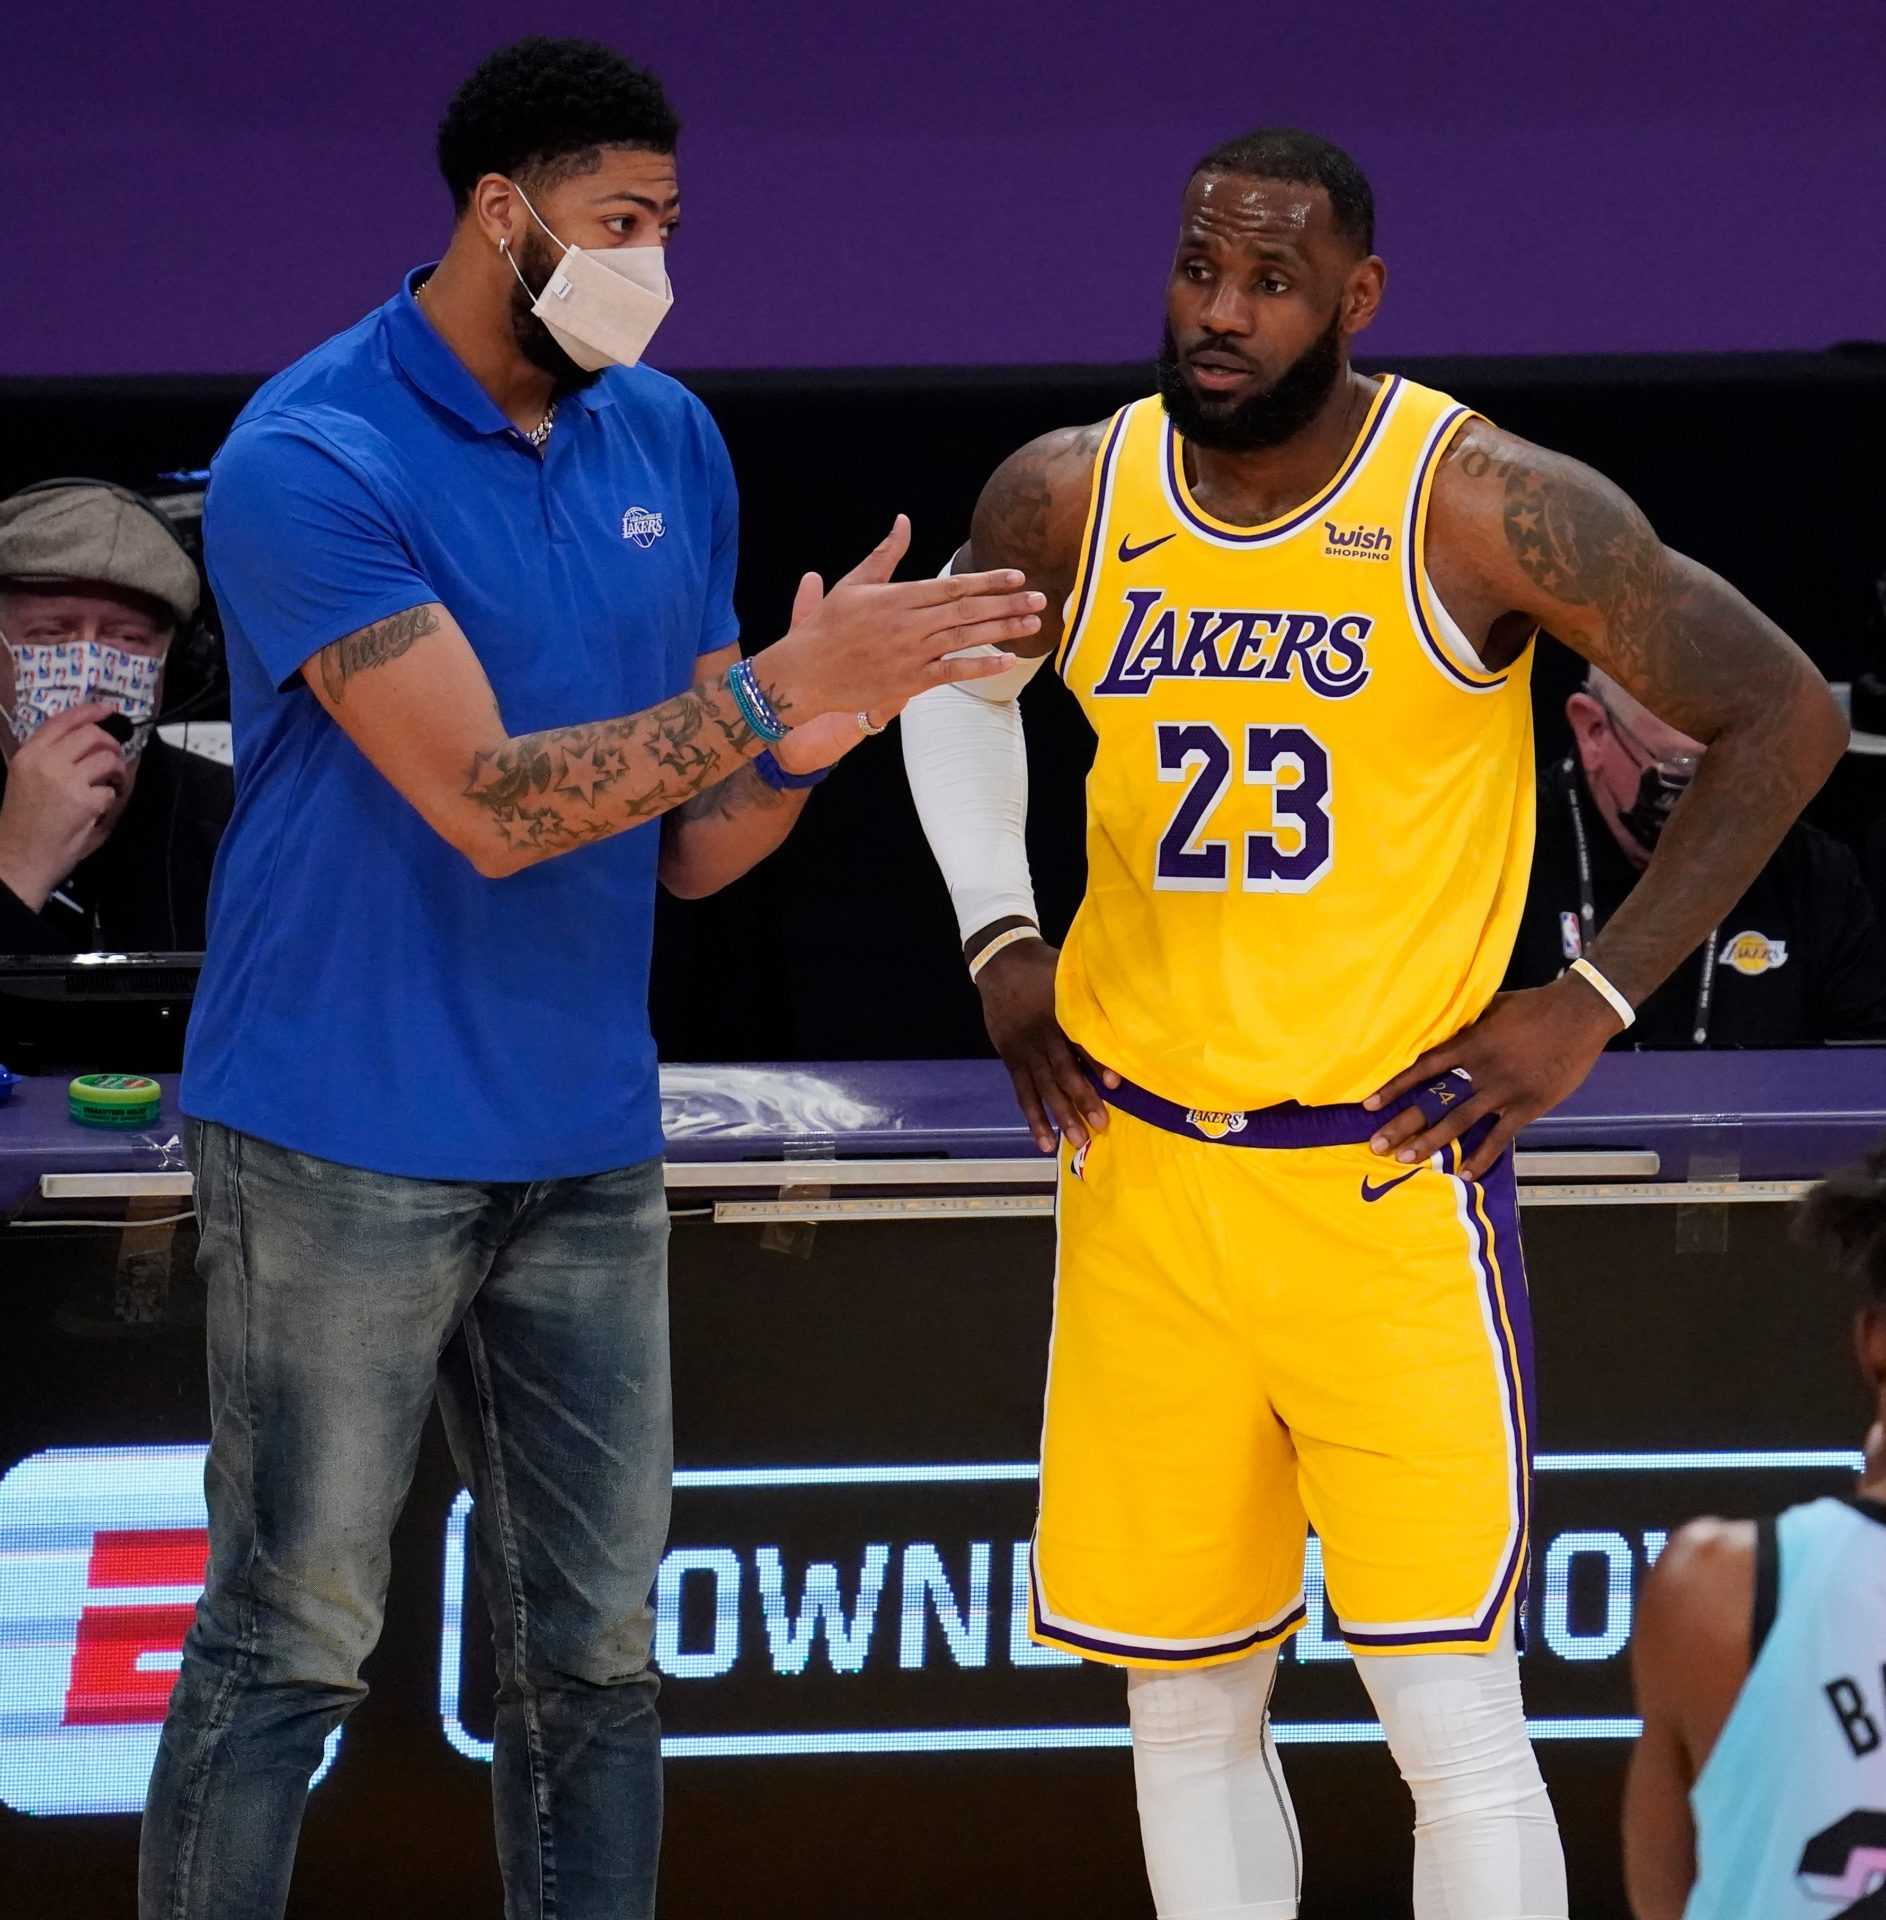 `` Juste mon esprit de compétition '': Anthony Davis des Lakers met un terme à l'idée de choisir une carrière d'entraîneur